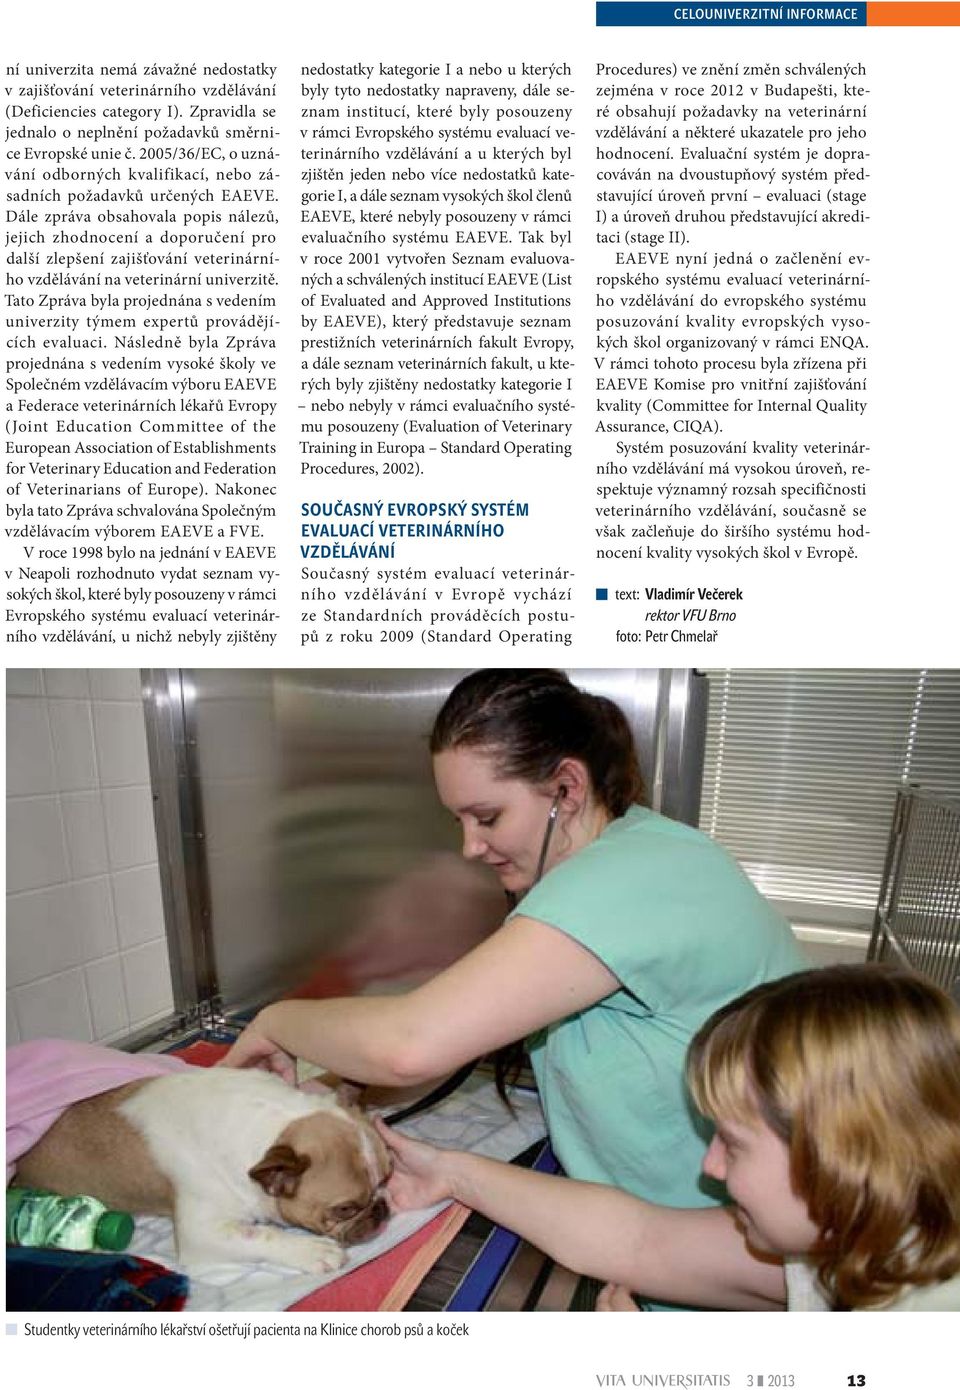 Dále zpráva obsahovala popis nálezů, jejich zhodnocení a doporučení pro další zlepšení zajišťování veterinárního vzdělávání na veterinární univerzitě.